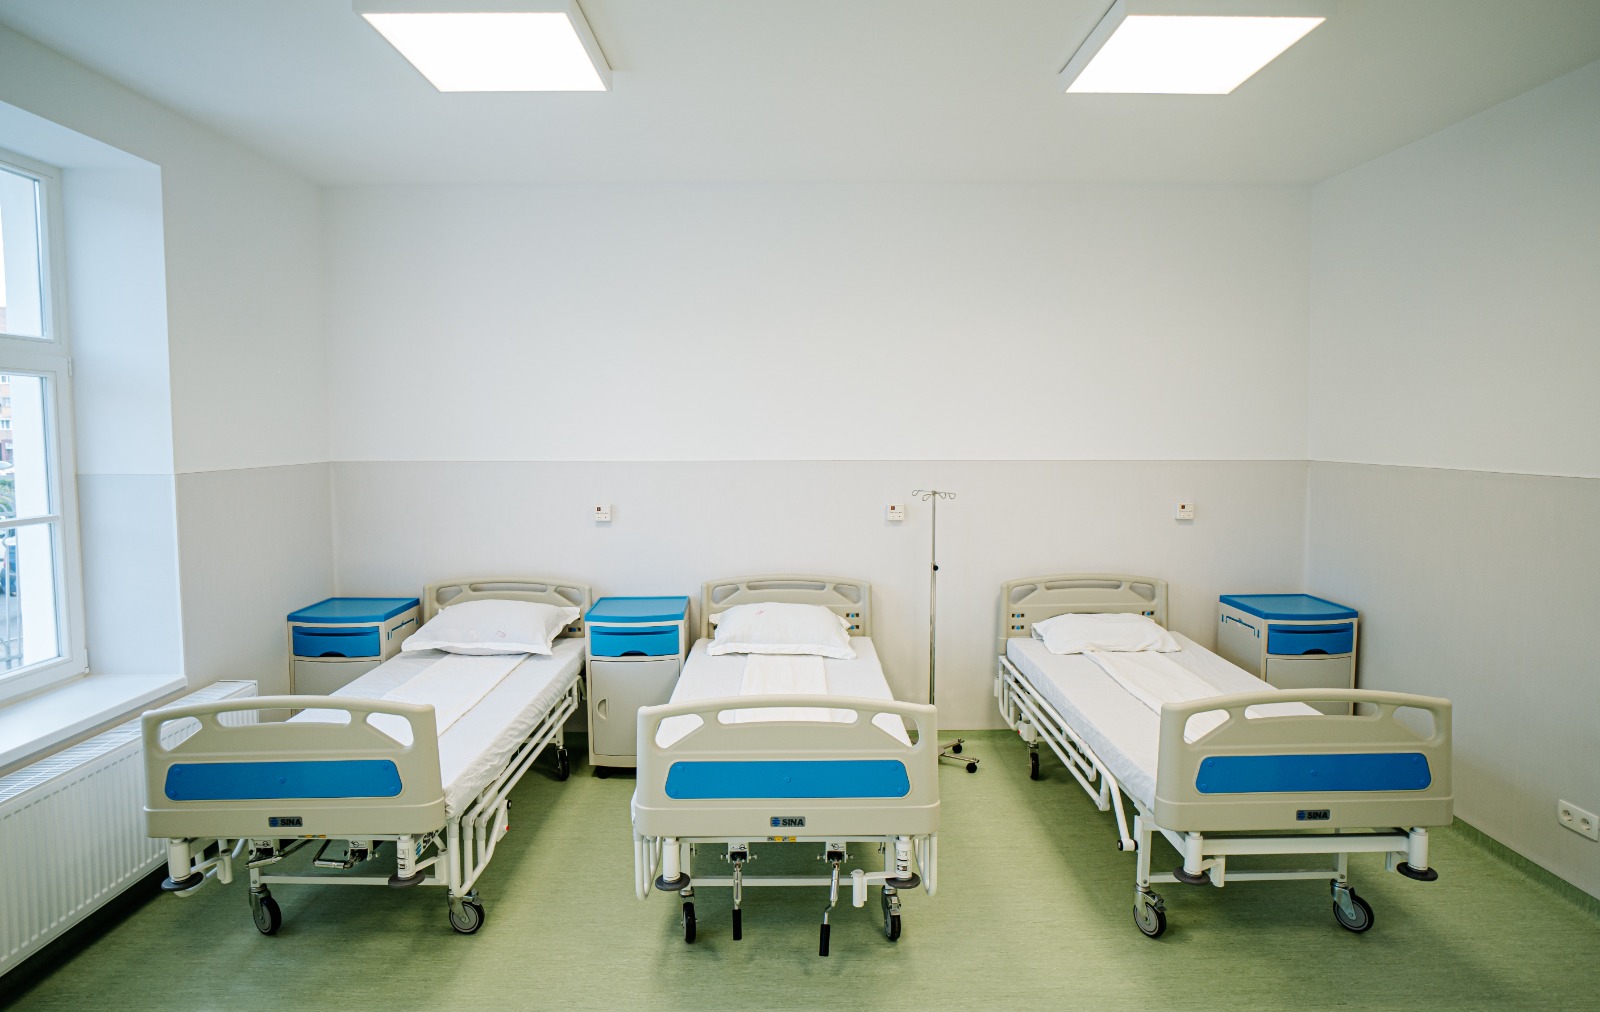 pavilionul clinicii dermato – venerologie a spitalului clinic județean de urgență sibiu este a 8-a clădire reabilitată și modernizată de către consiliul județean sibiu